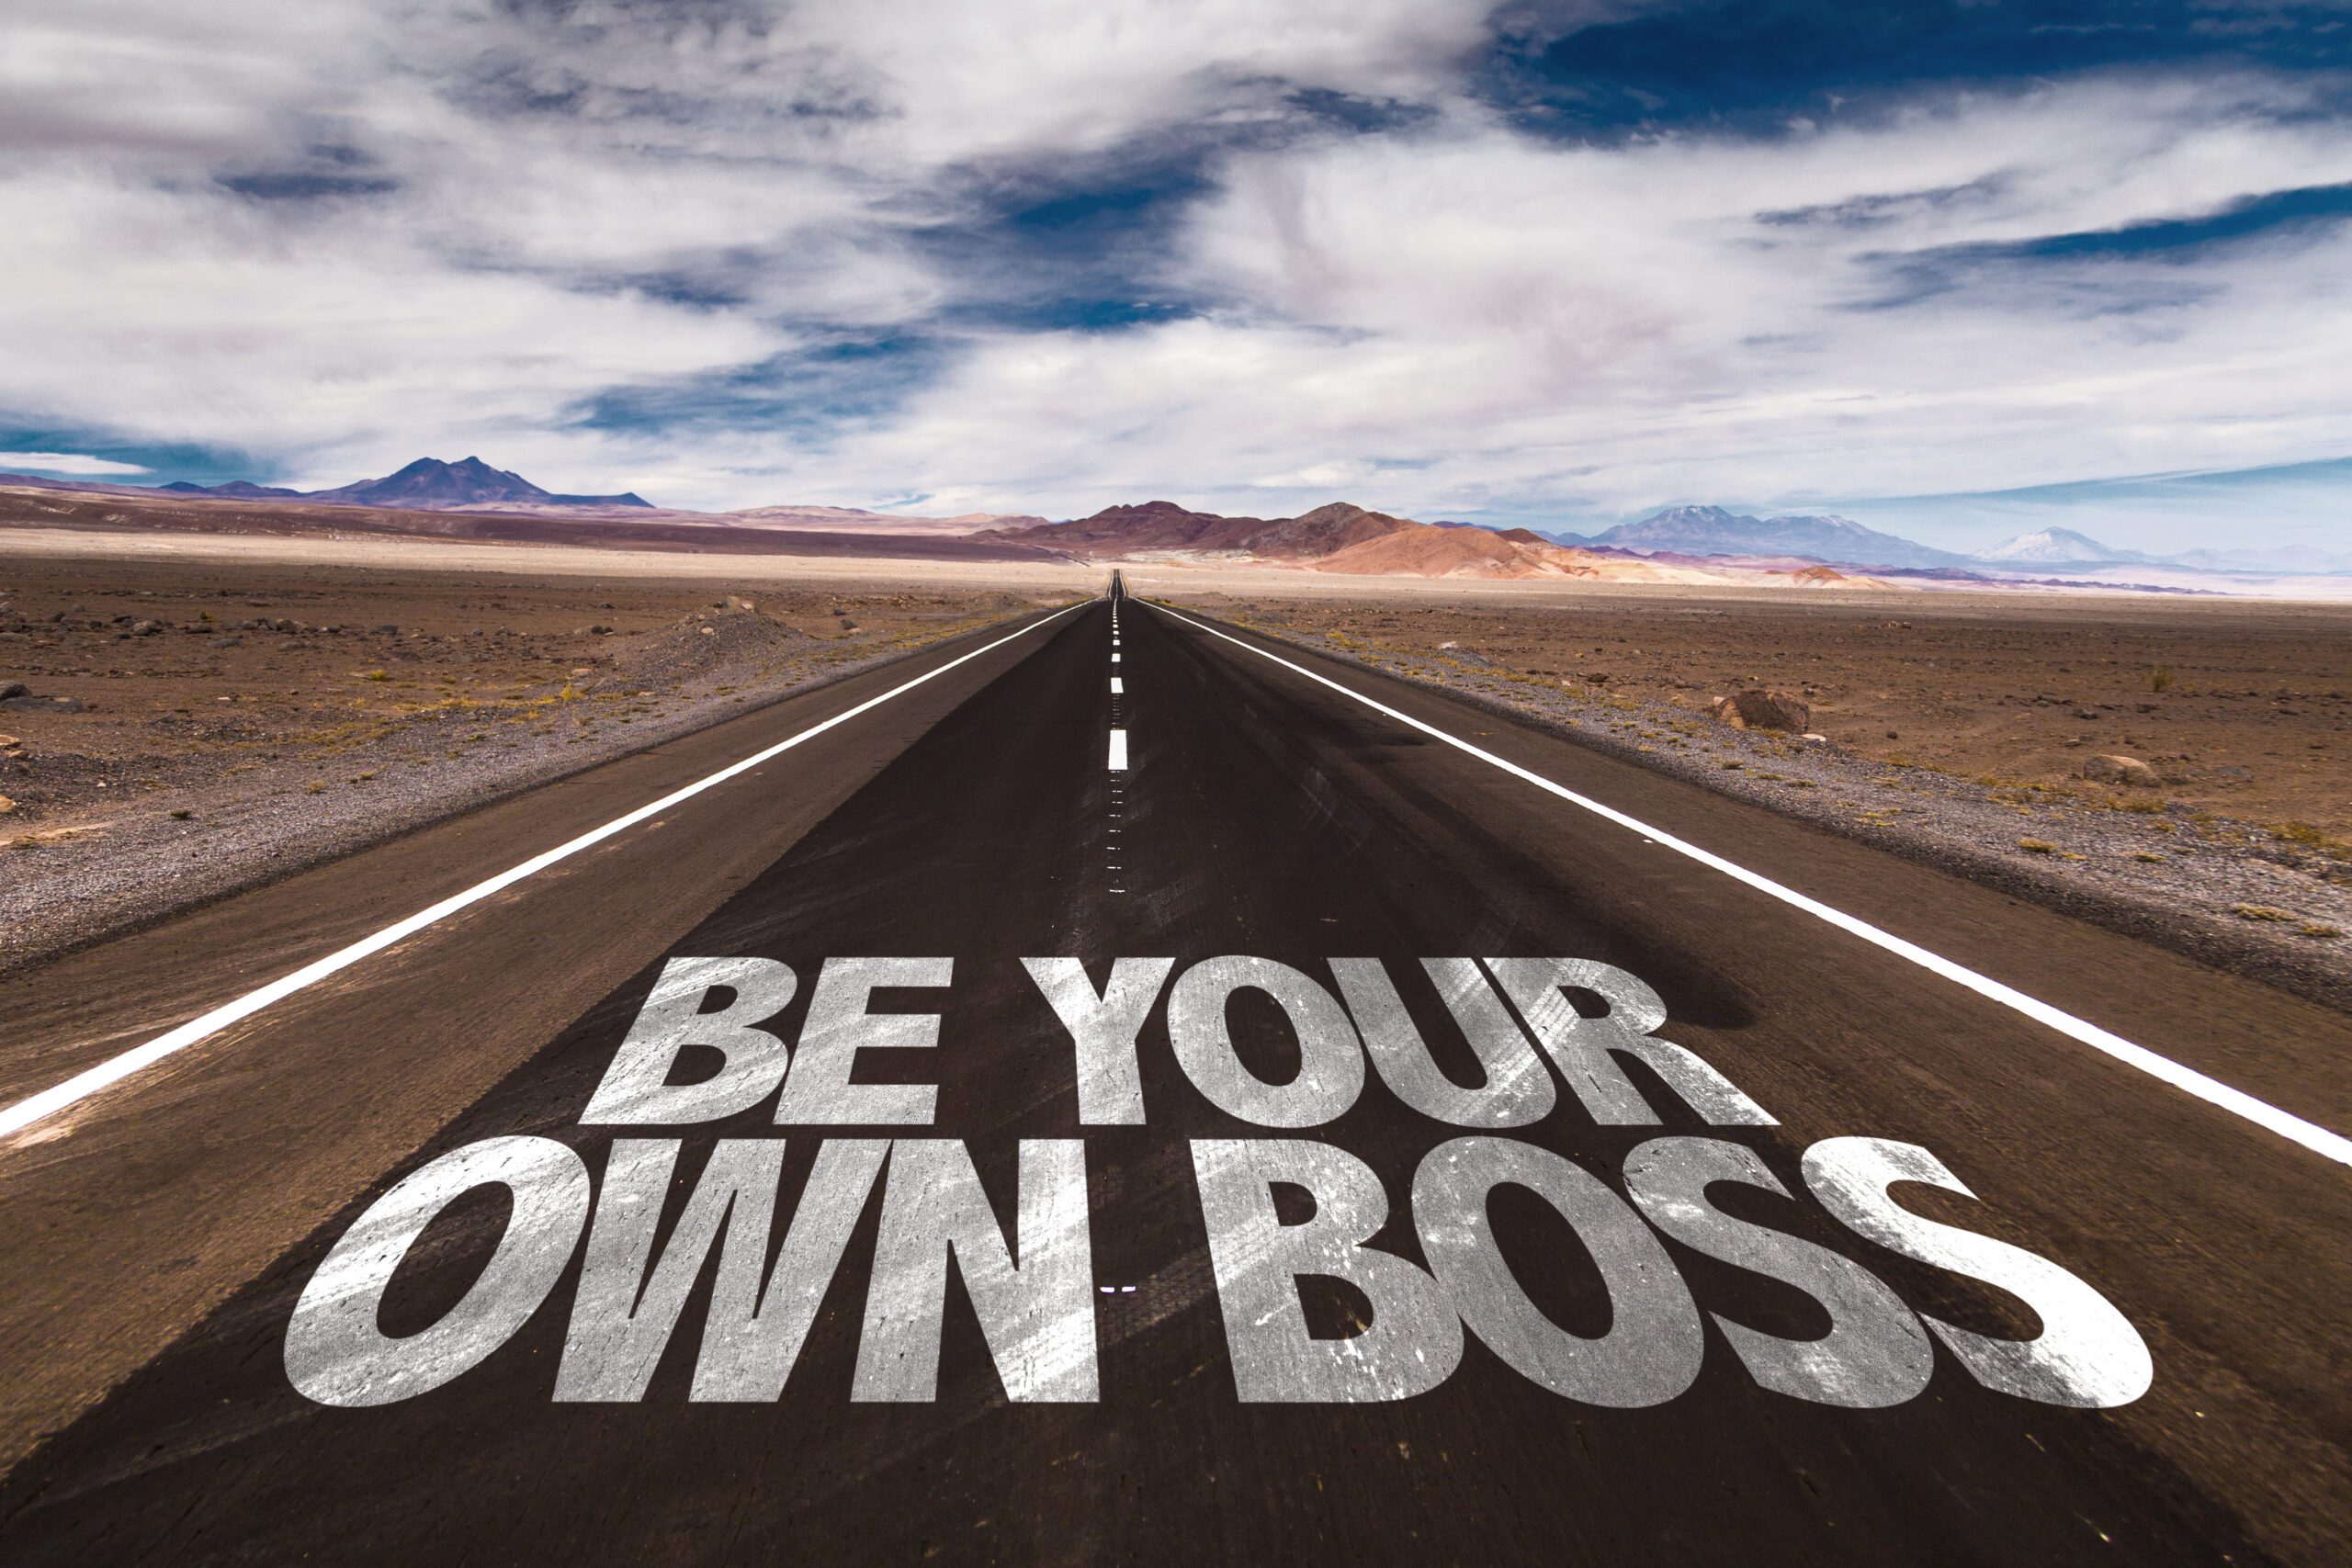 Be Your Own Boss written on desert road